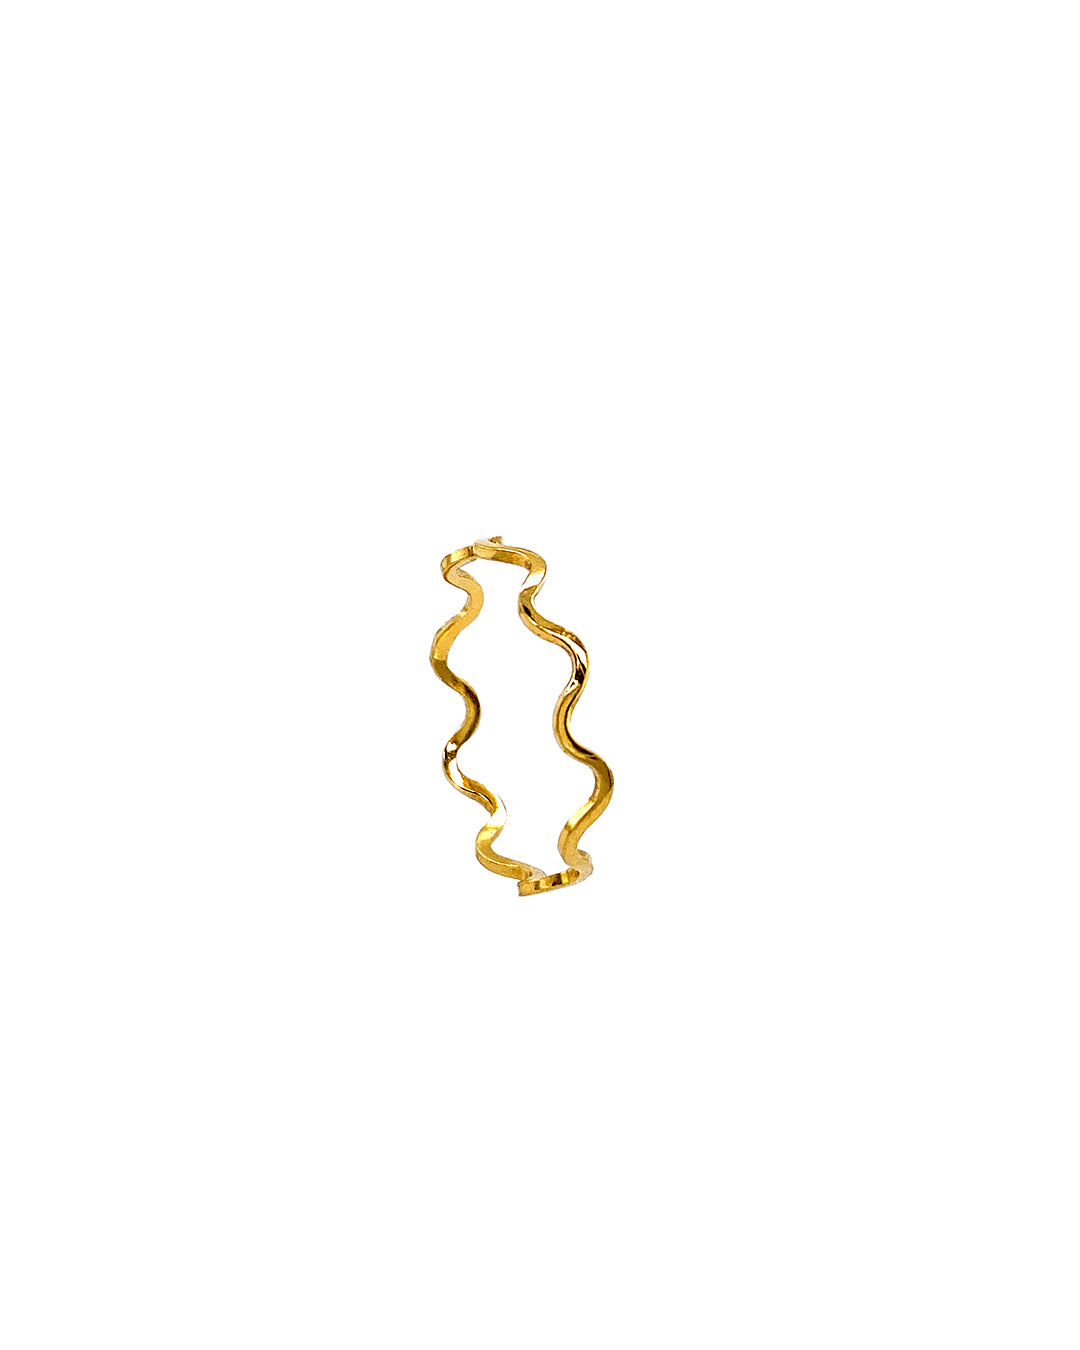 IDAMARI Billow Ring in Gold available at Lahn.shop